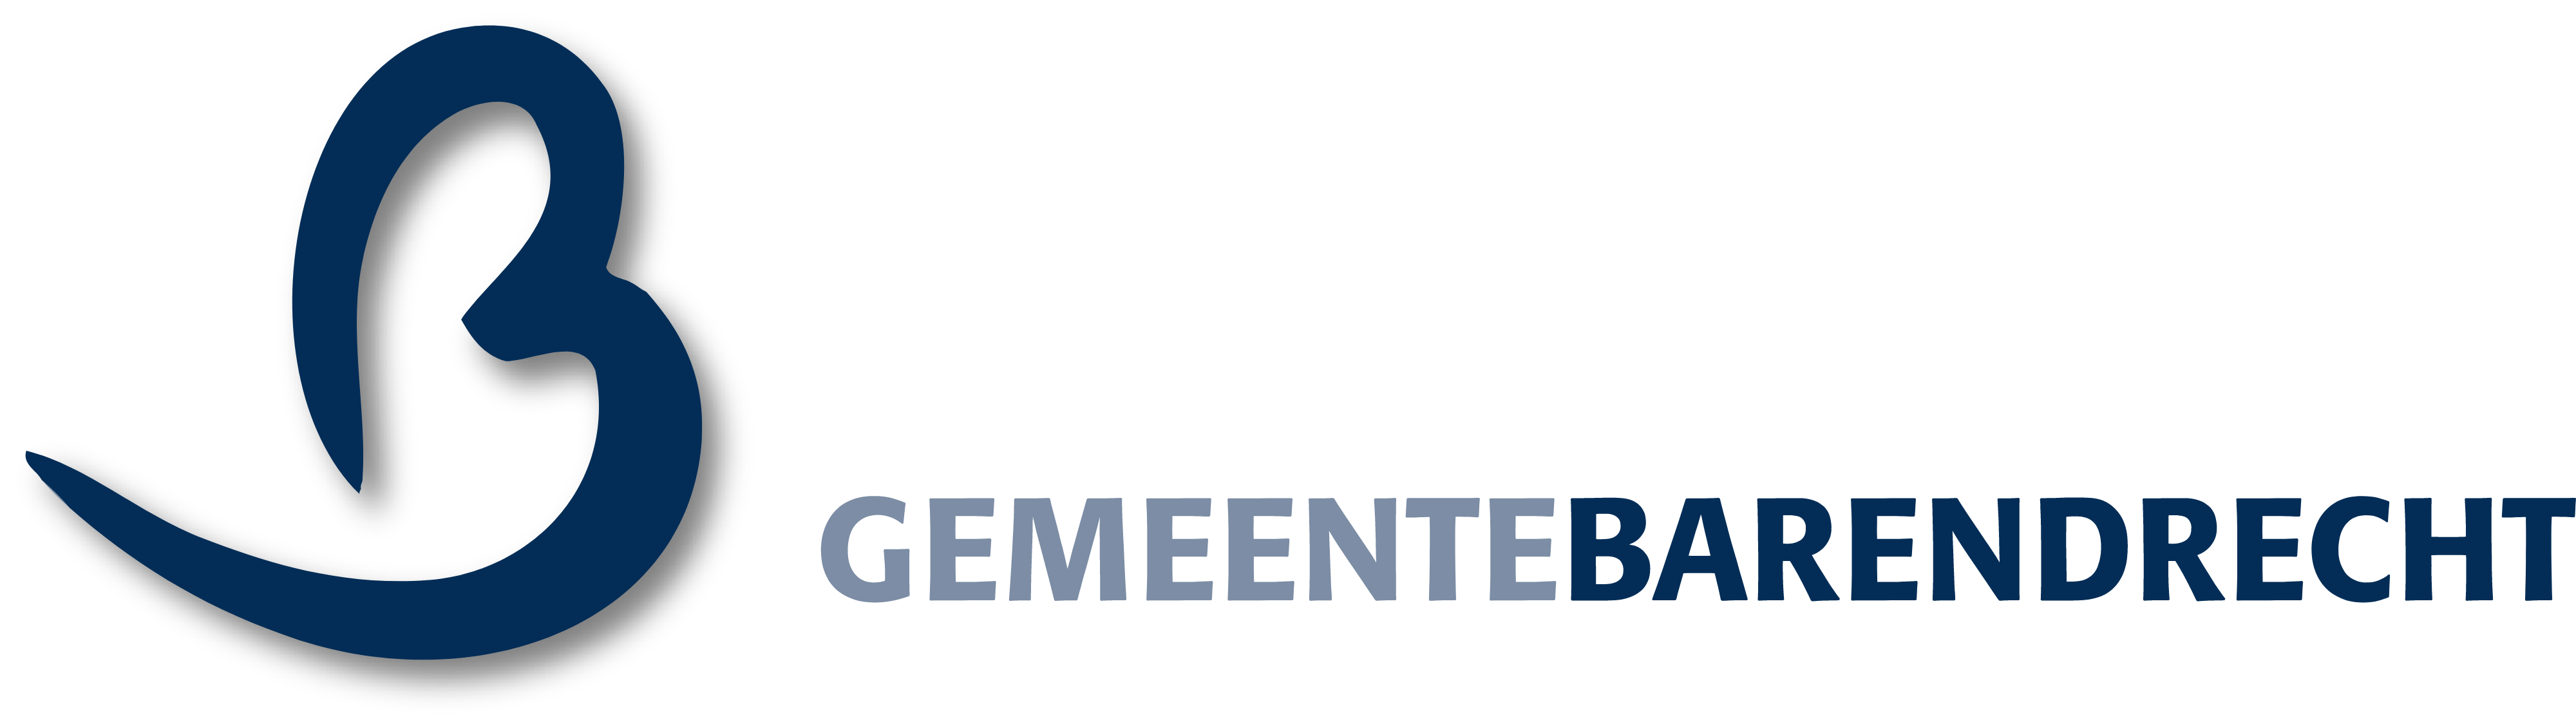 gemeente barendrecht logo